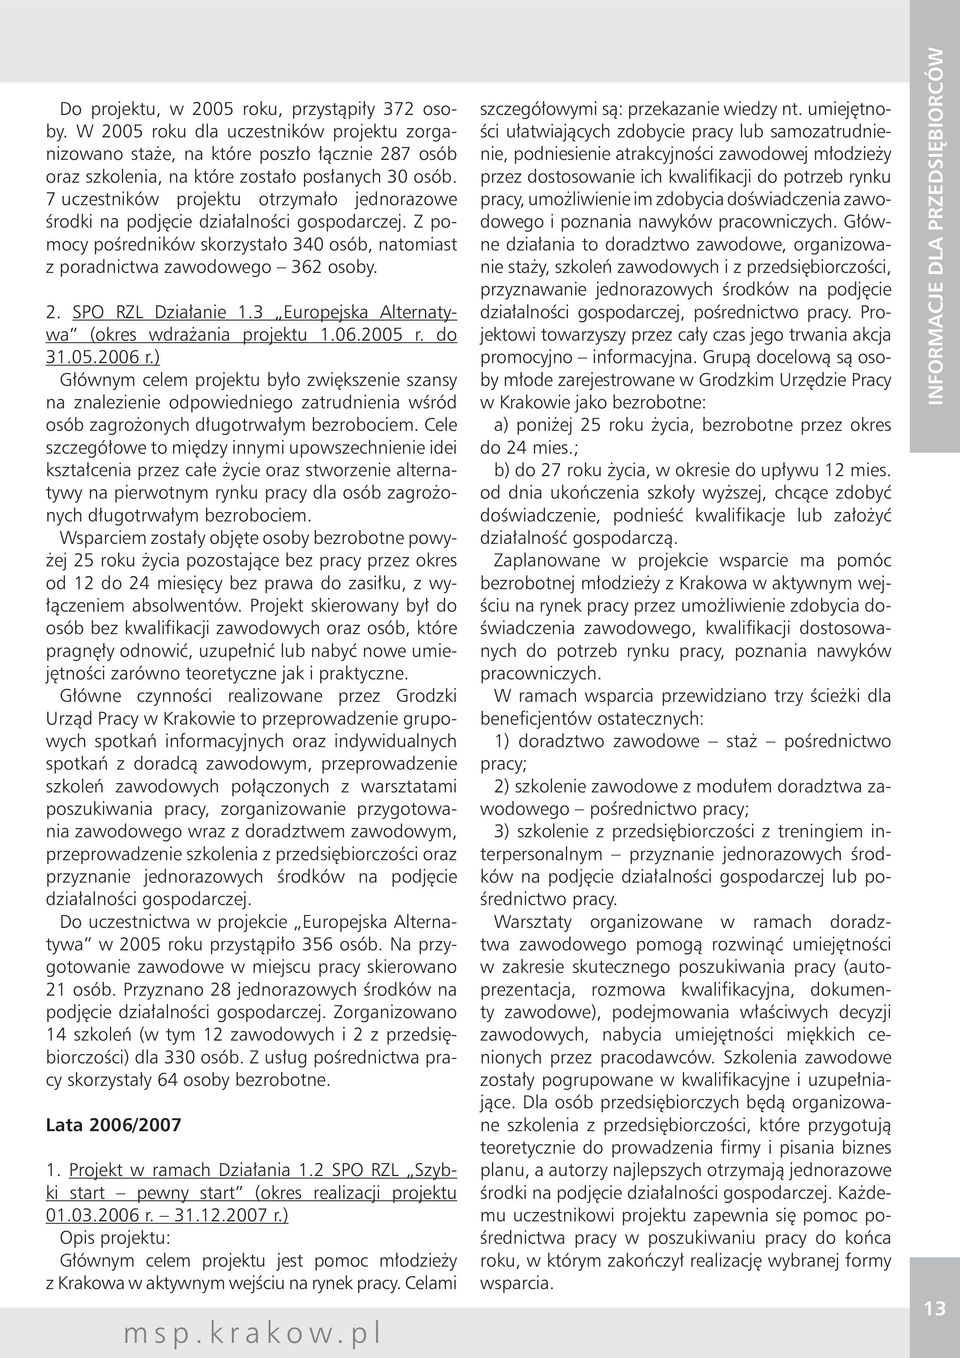 SPO RZL Działanie 1.3 Europejska Alternatywa (okres wdrażania projektu 1.06.2005 r. do 31.05.2006 r.